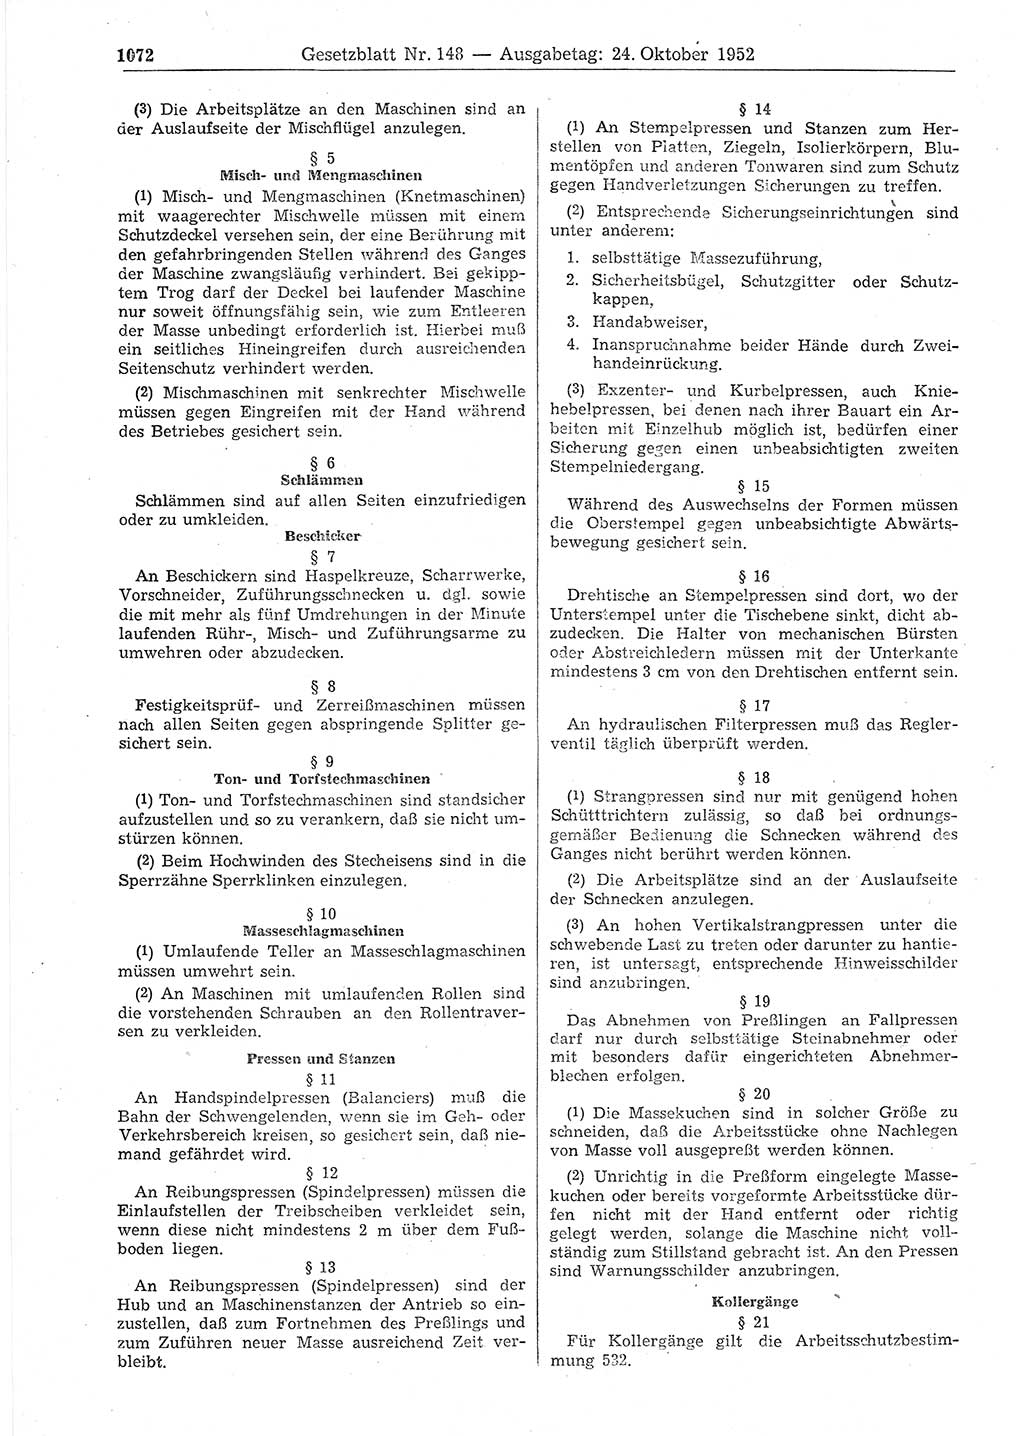 Gesetzblatt (GBl.) der Deutschen Demokratischen Republik (DDR) 1952, Seite 1072 (GBl. DDR 1952, S. 1072)